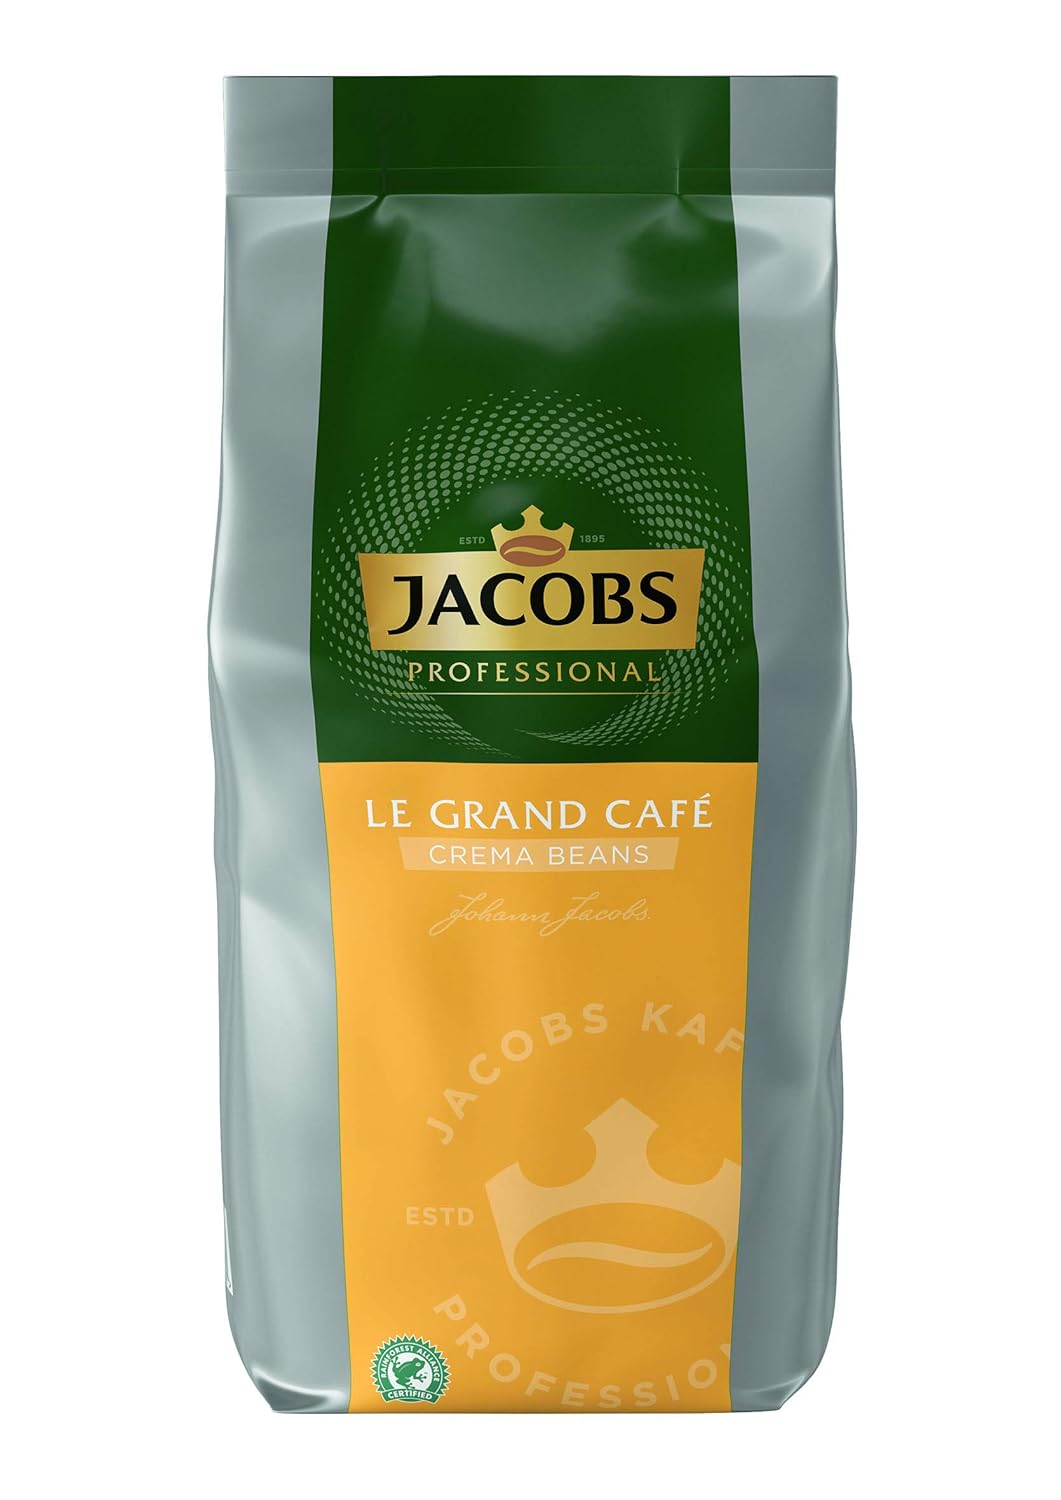 Jacobs Professional Le Grand Café Crema, entire coffee beans 1kg, mild, intensity 2/5